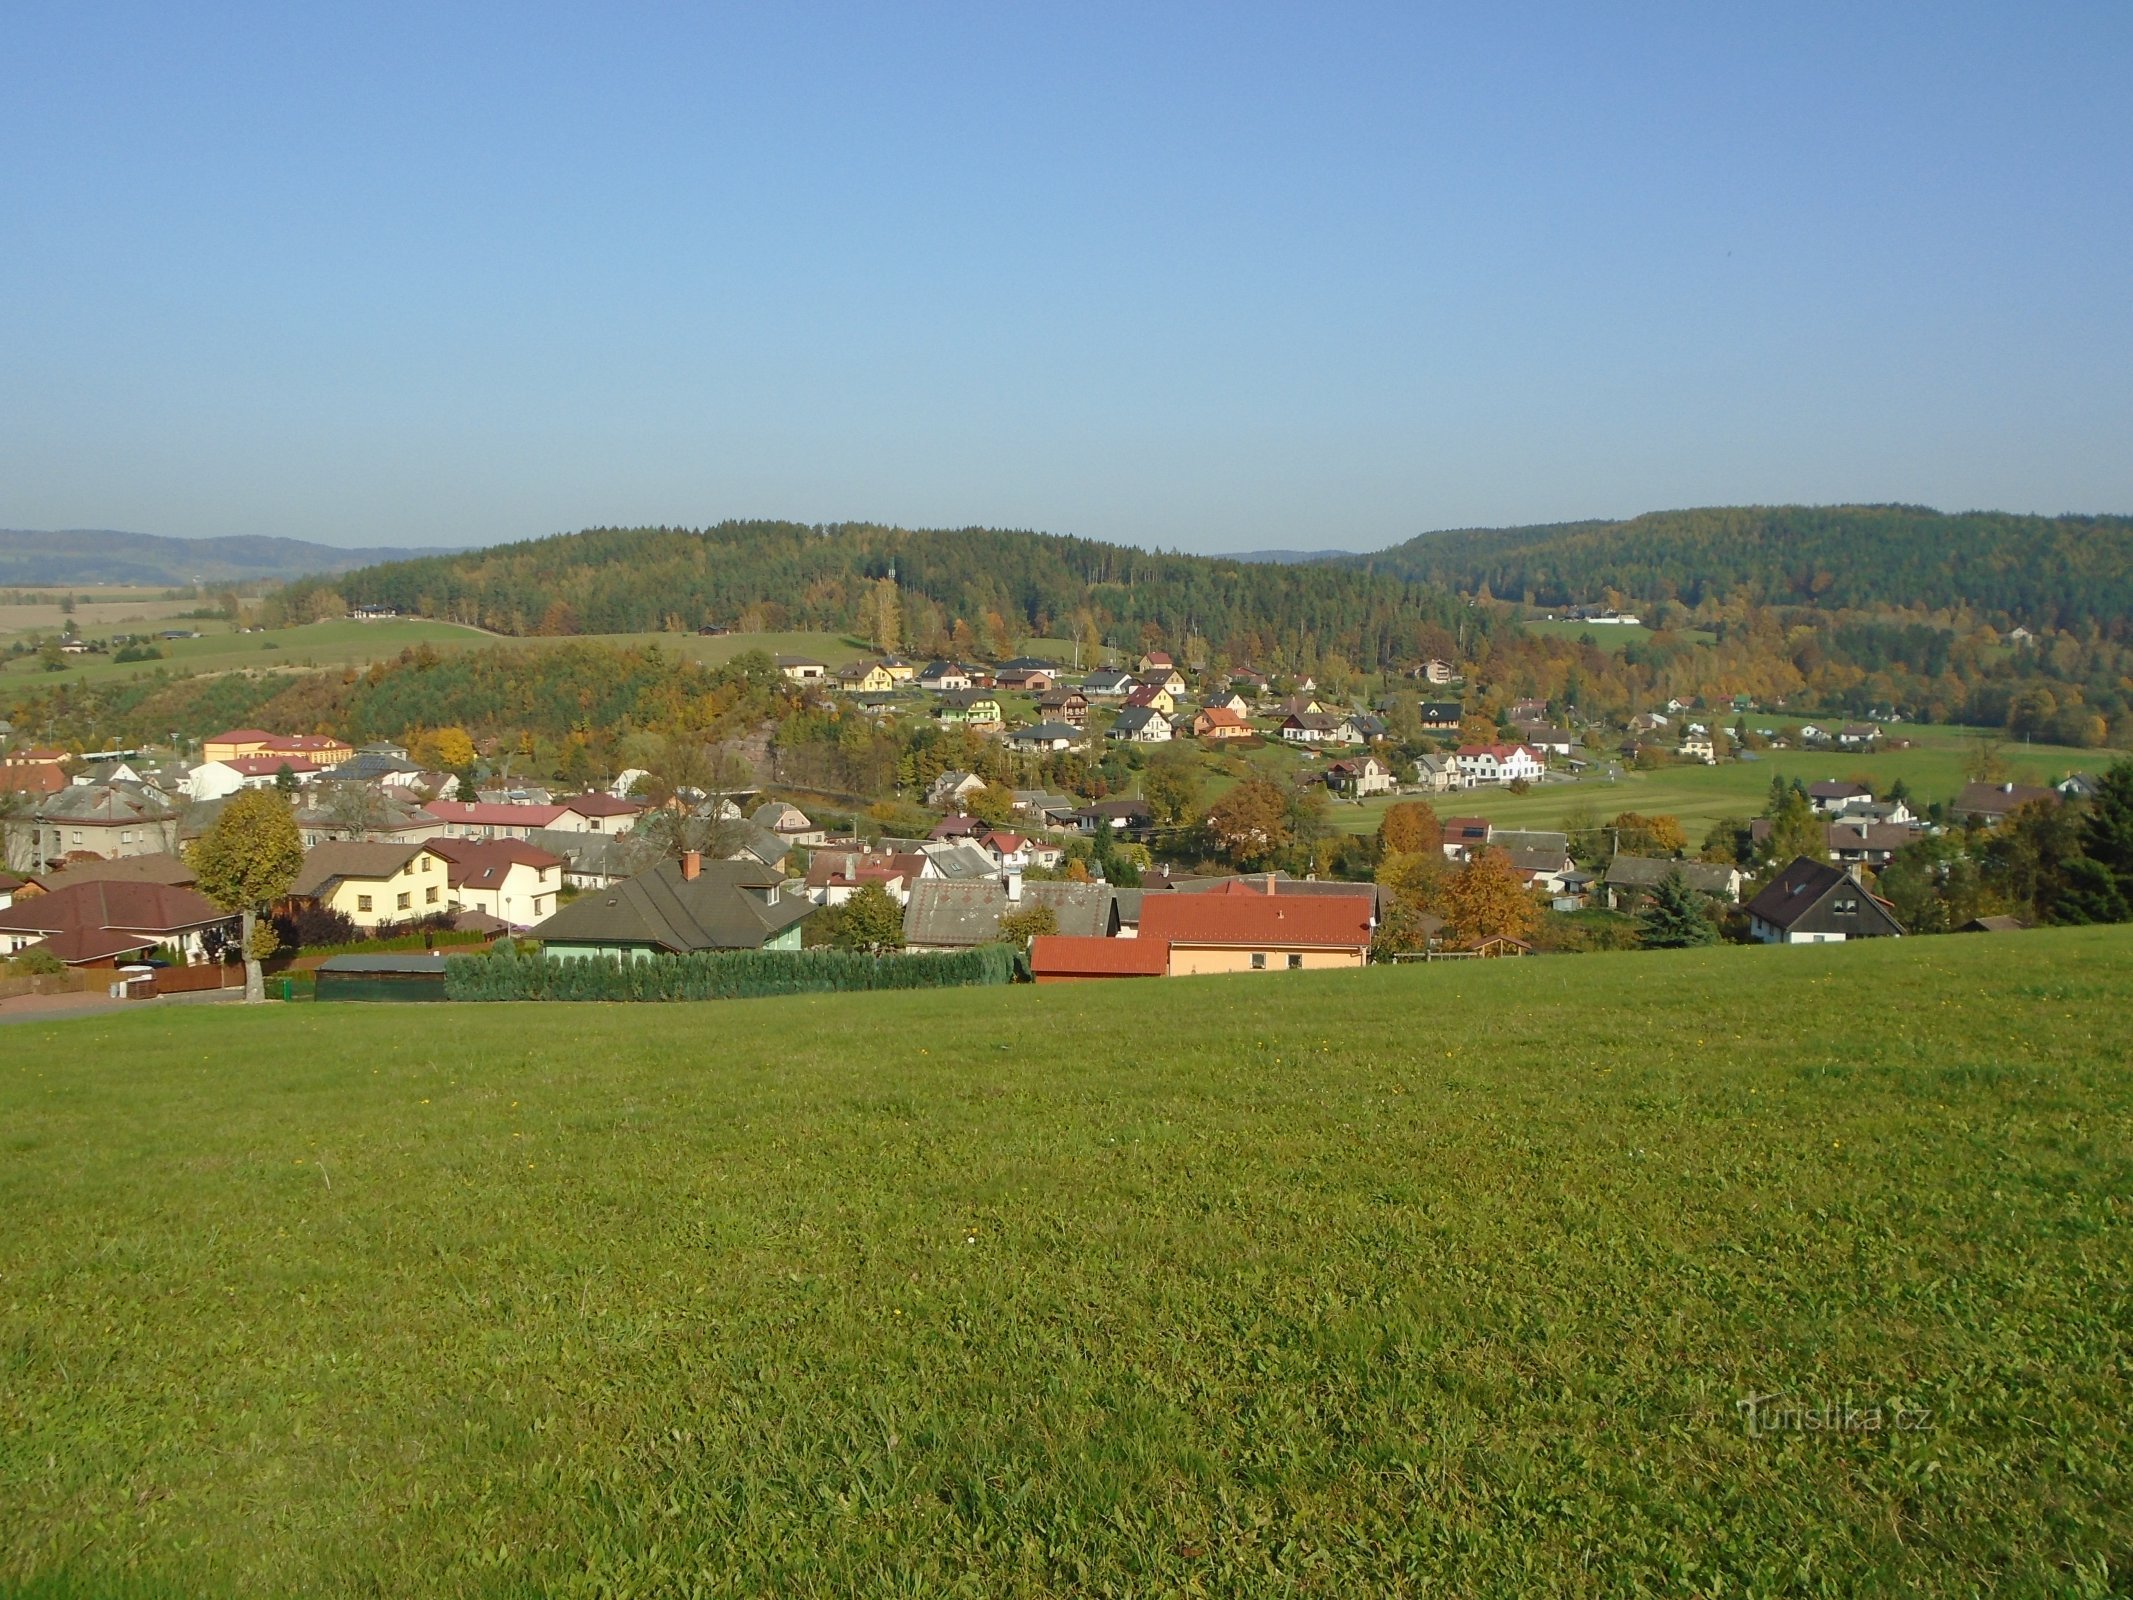 Kilátás Havlovice, Háječek közepén, a falu felett